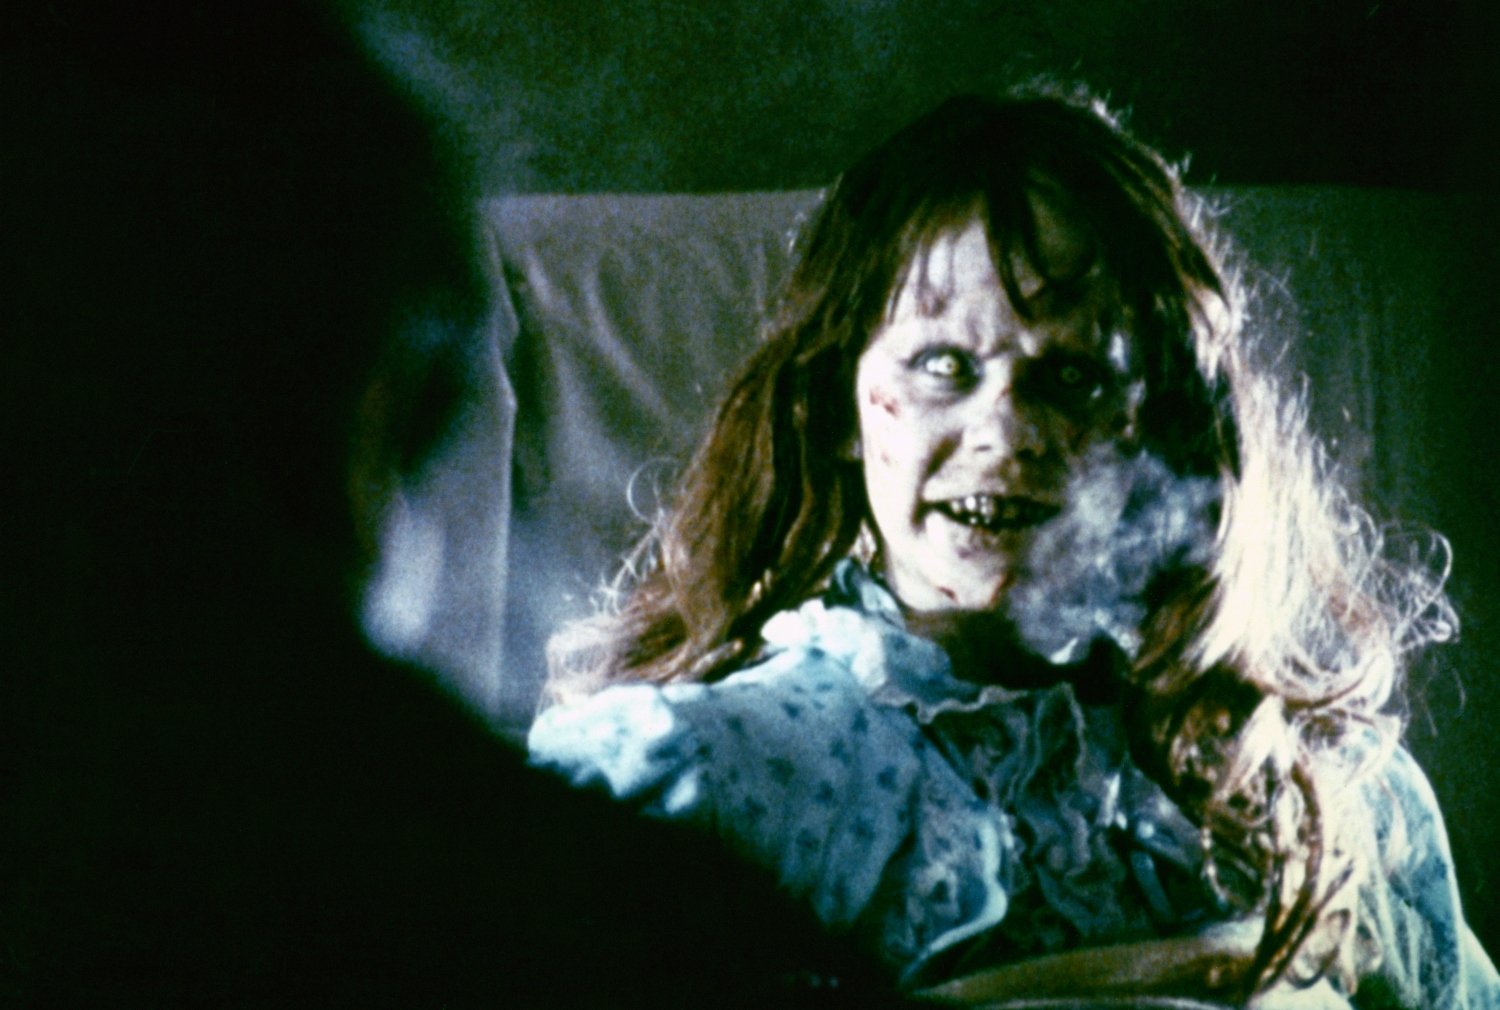 Linda Blair as Regan in 'The Exorcist'